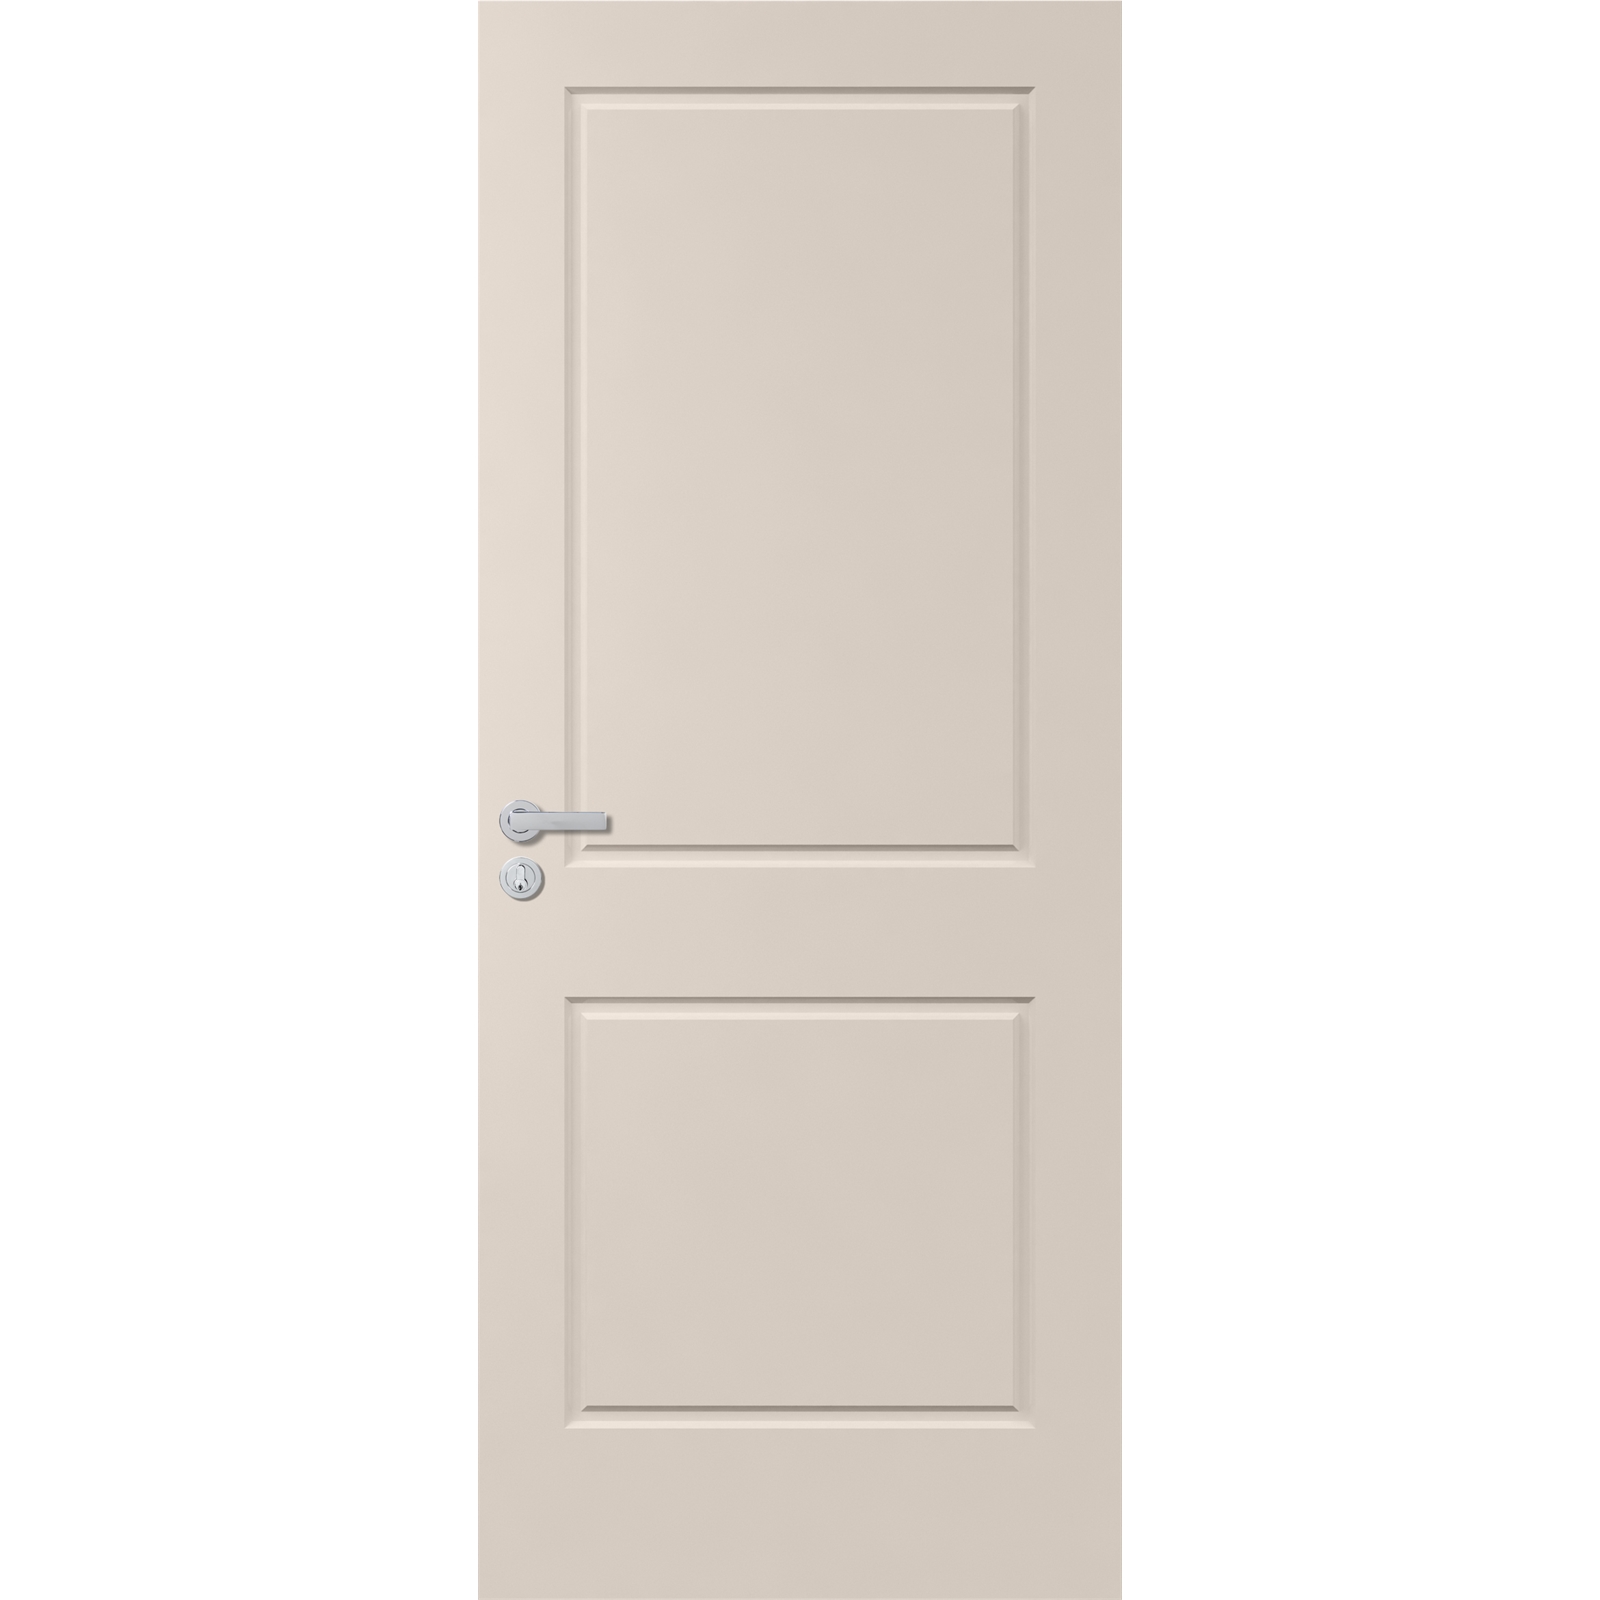 Corinthian Doors 2040 x 820 x 40mm Urban Primed Entrance Door